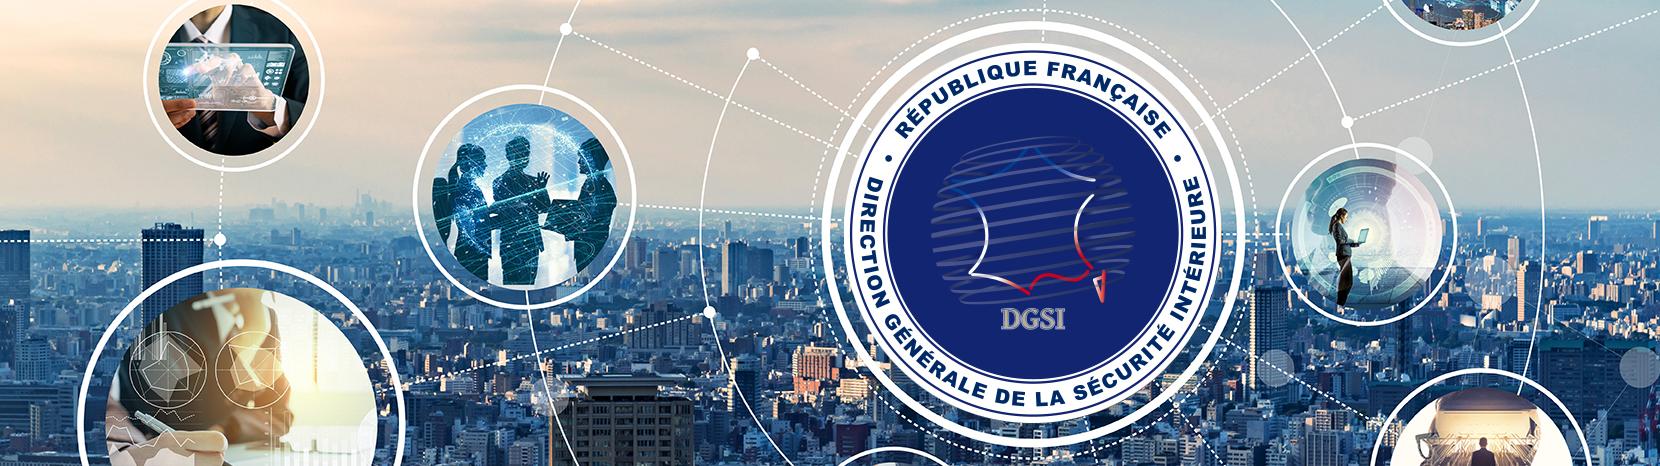 les missions de la DGSI sécurité intérieure et logo